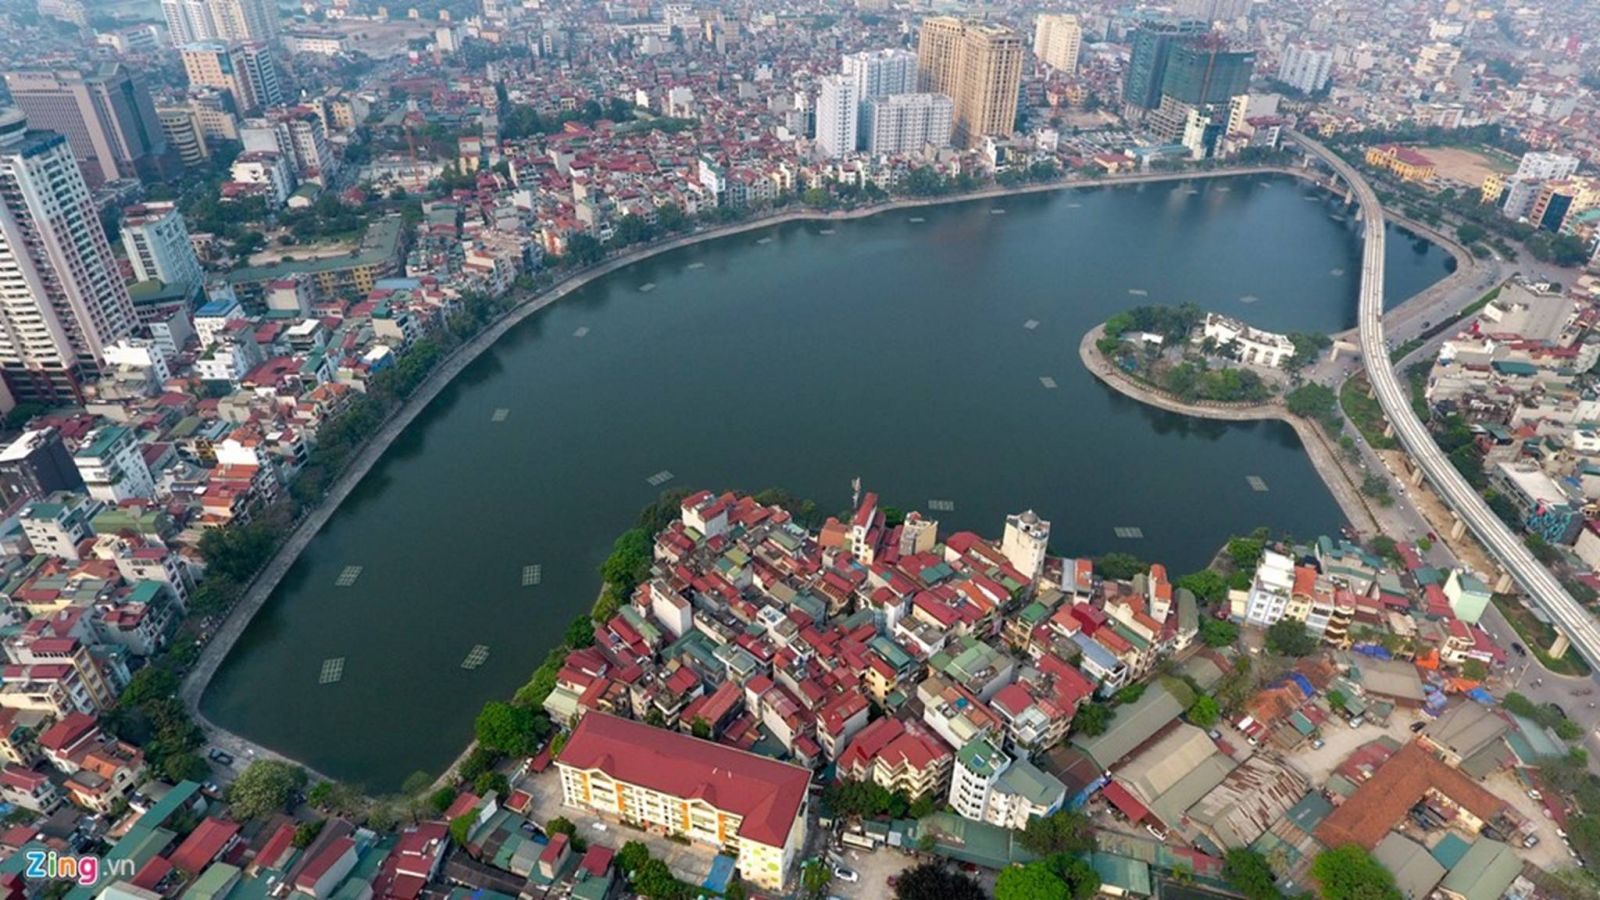 Reatimes cập nhật bảng giá đất quận Đống Đa, thành phố Hà Nội mới nhất năm 2019. Ảnh minh họa.